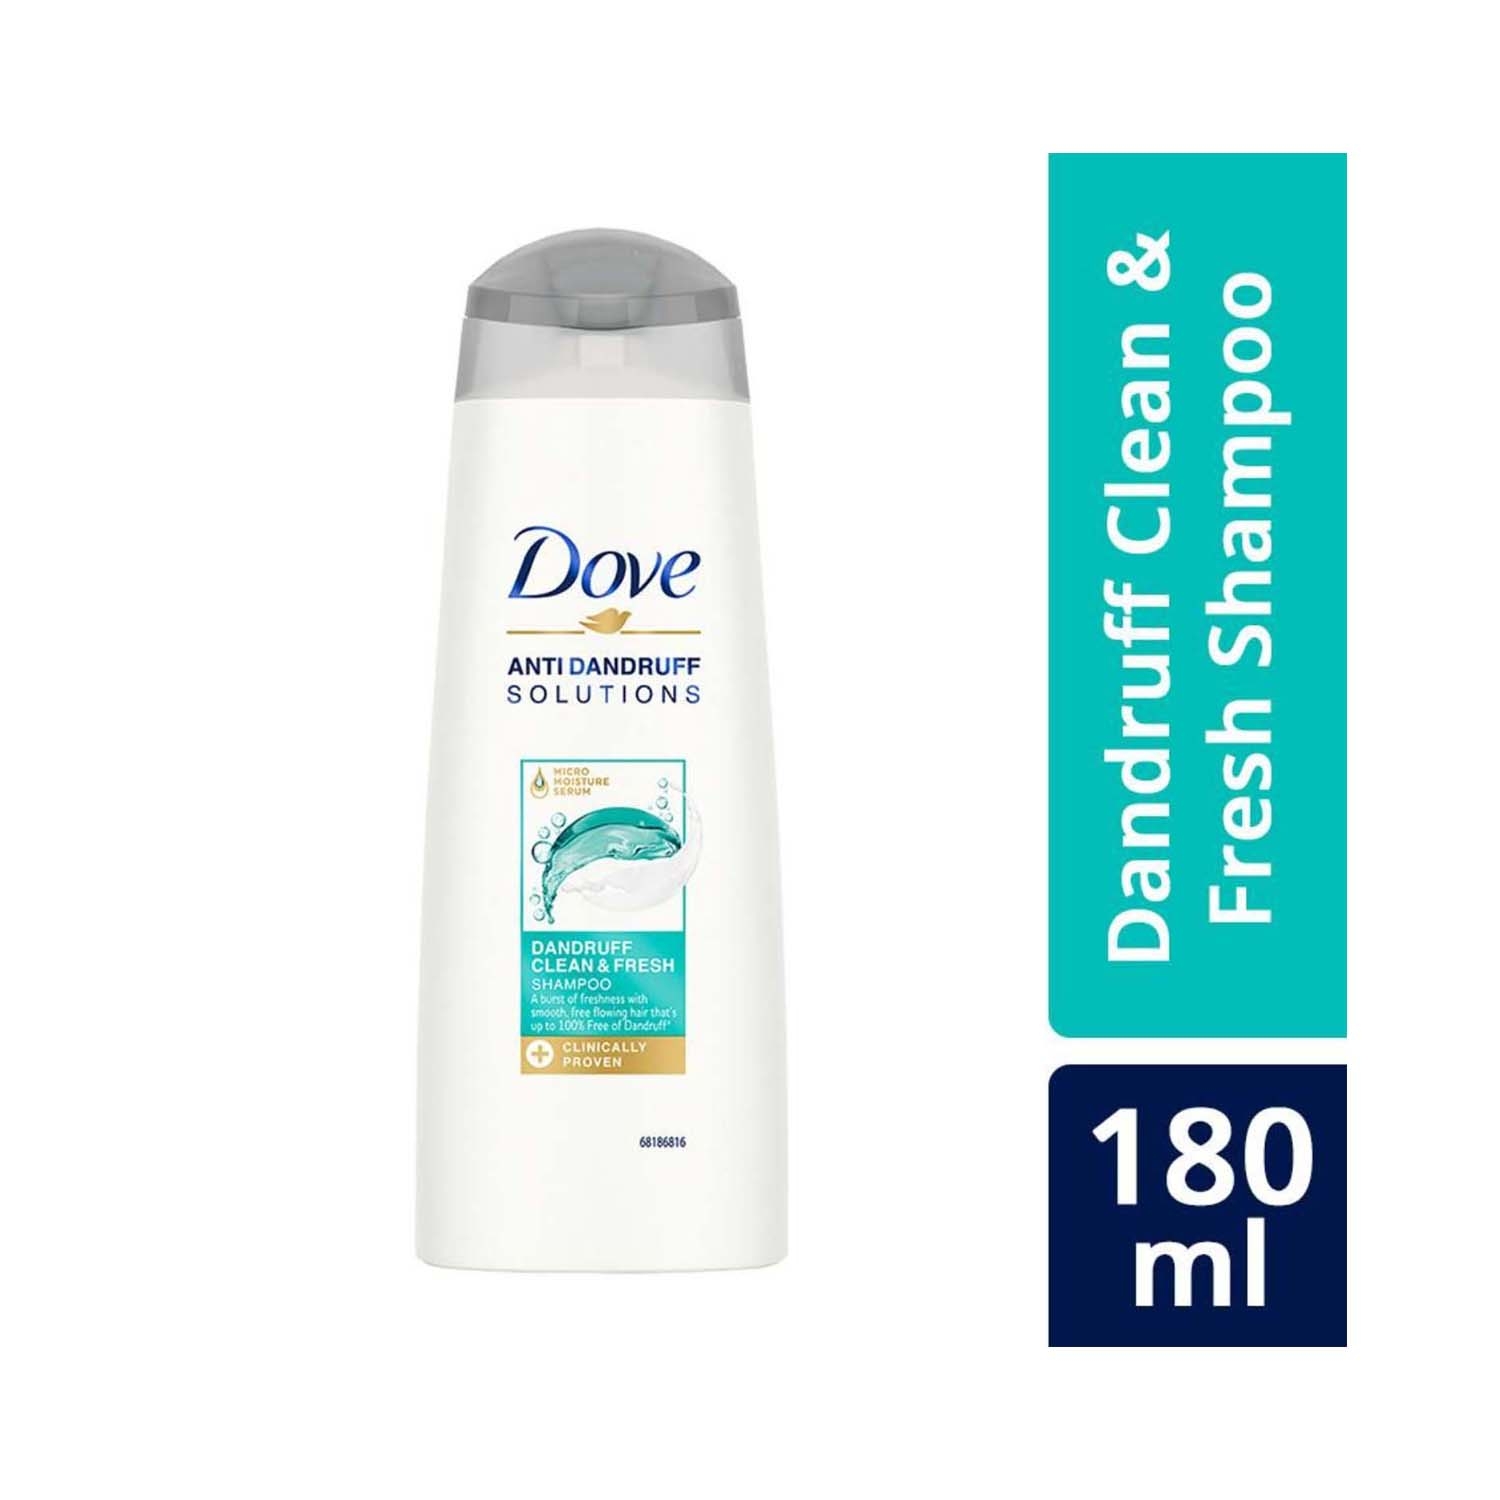 Dove | Dove Dandruff Clean & Fresh Shampoo - (180ml)